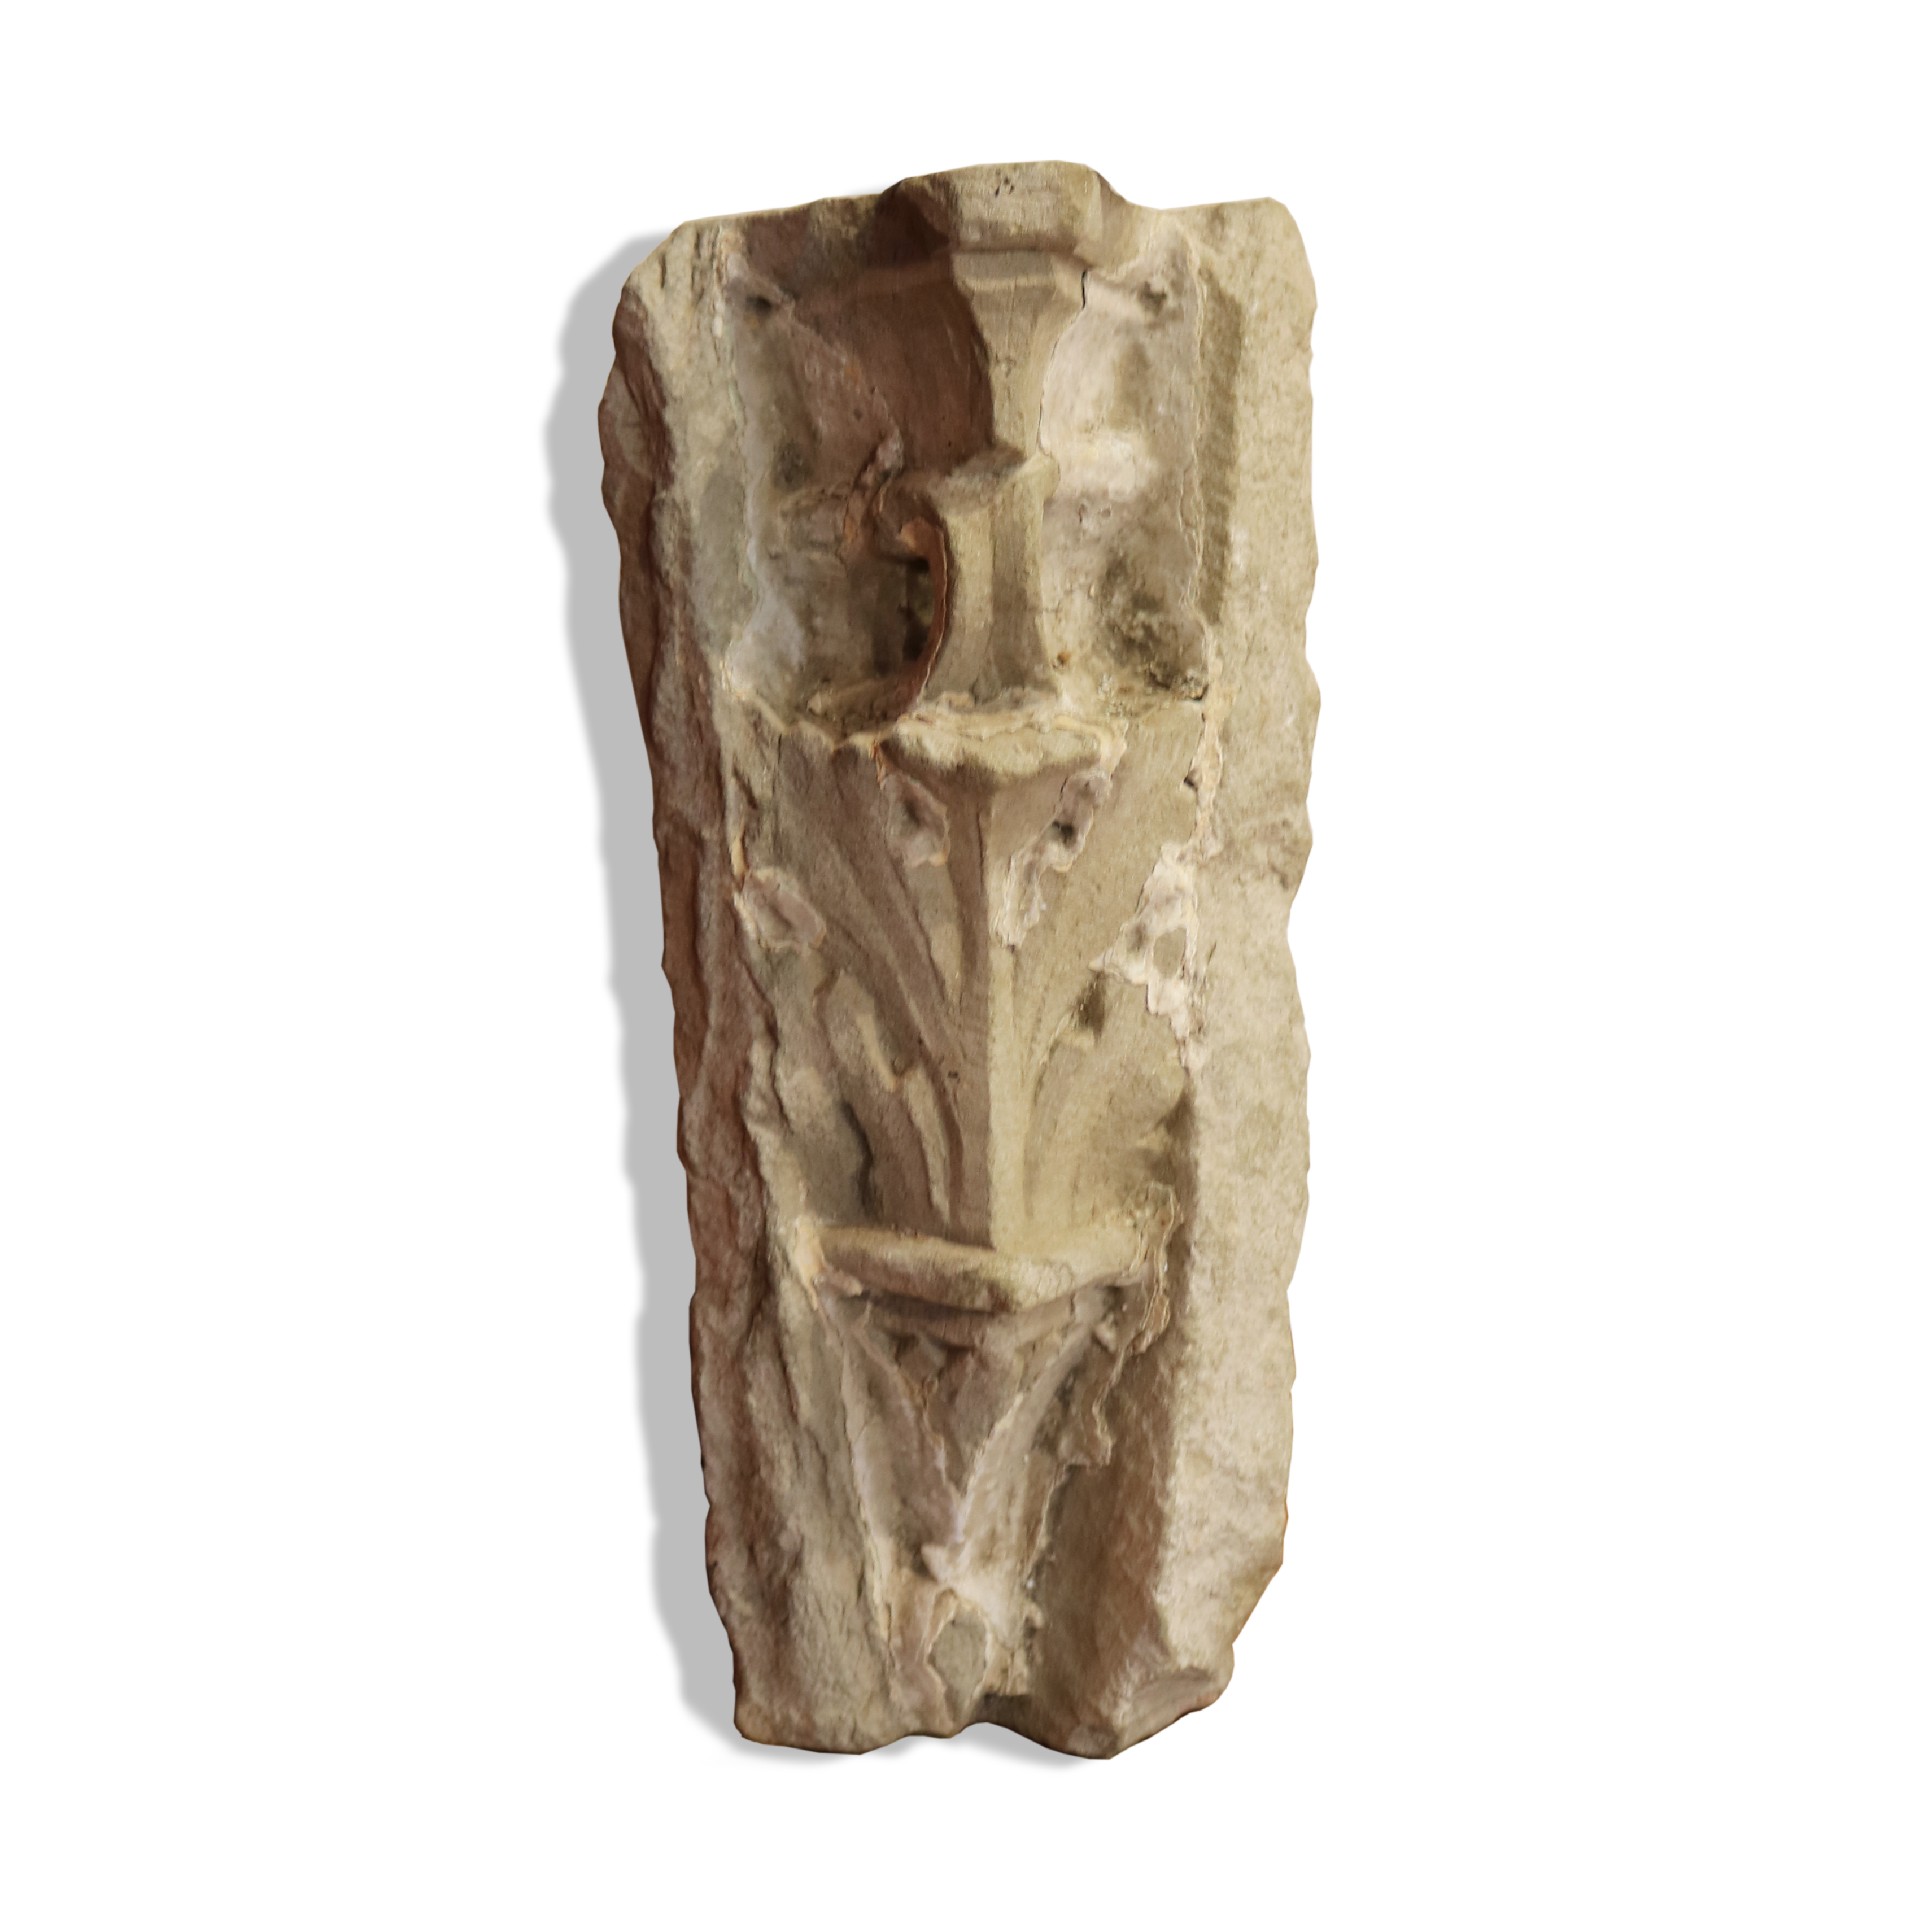 Antico capitello in pietra.  - Capitelli basi per colonne - Architettura - Prodotti - Antichità Fiorillo